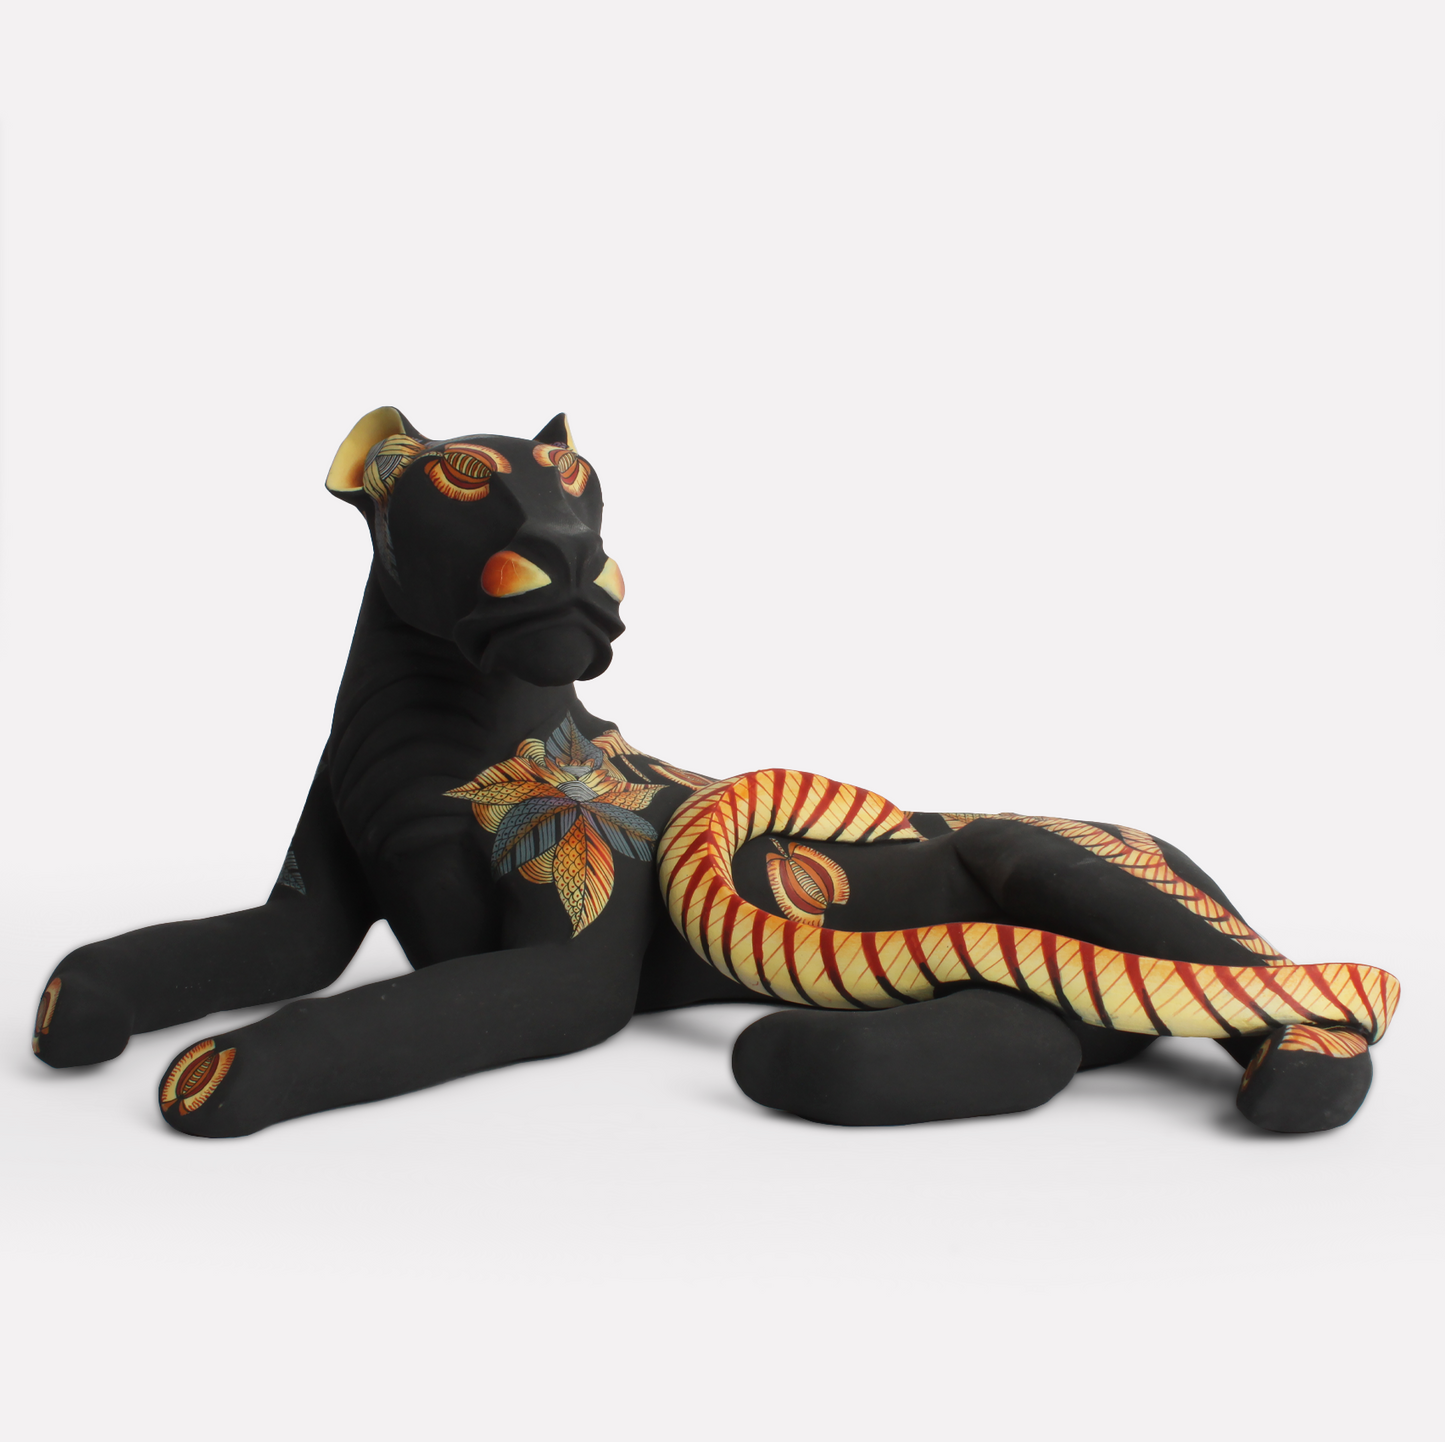 Safari Cat Sculpture